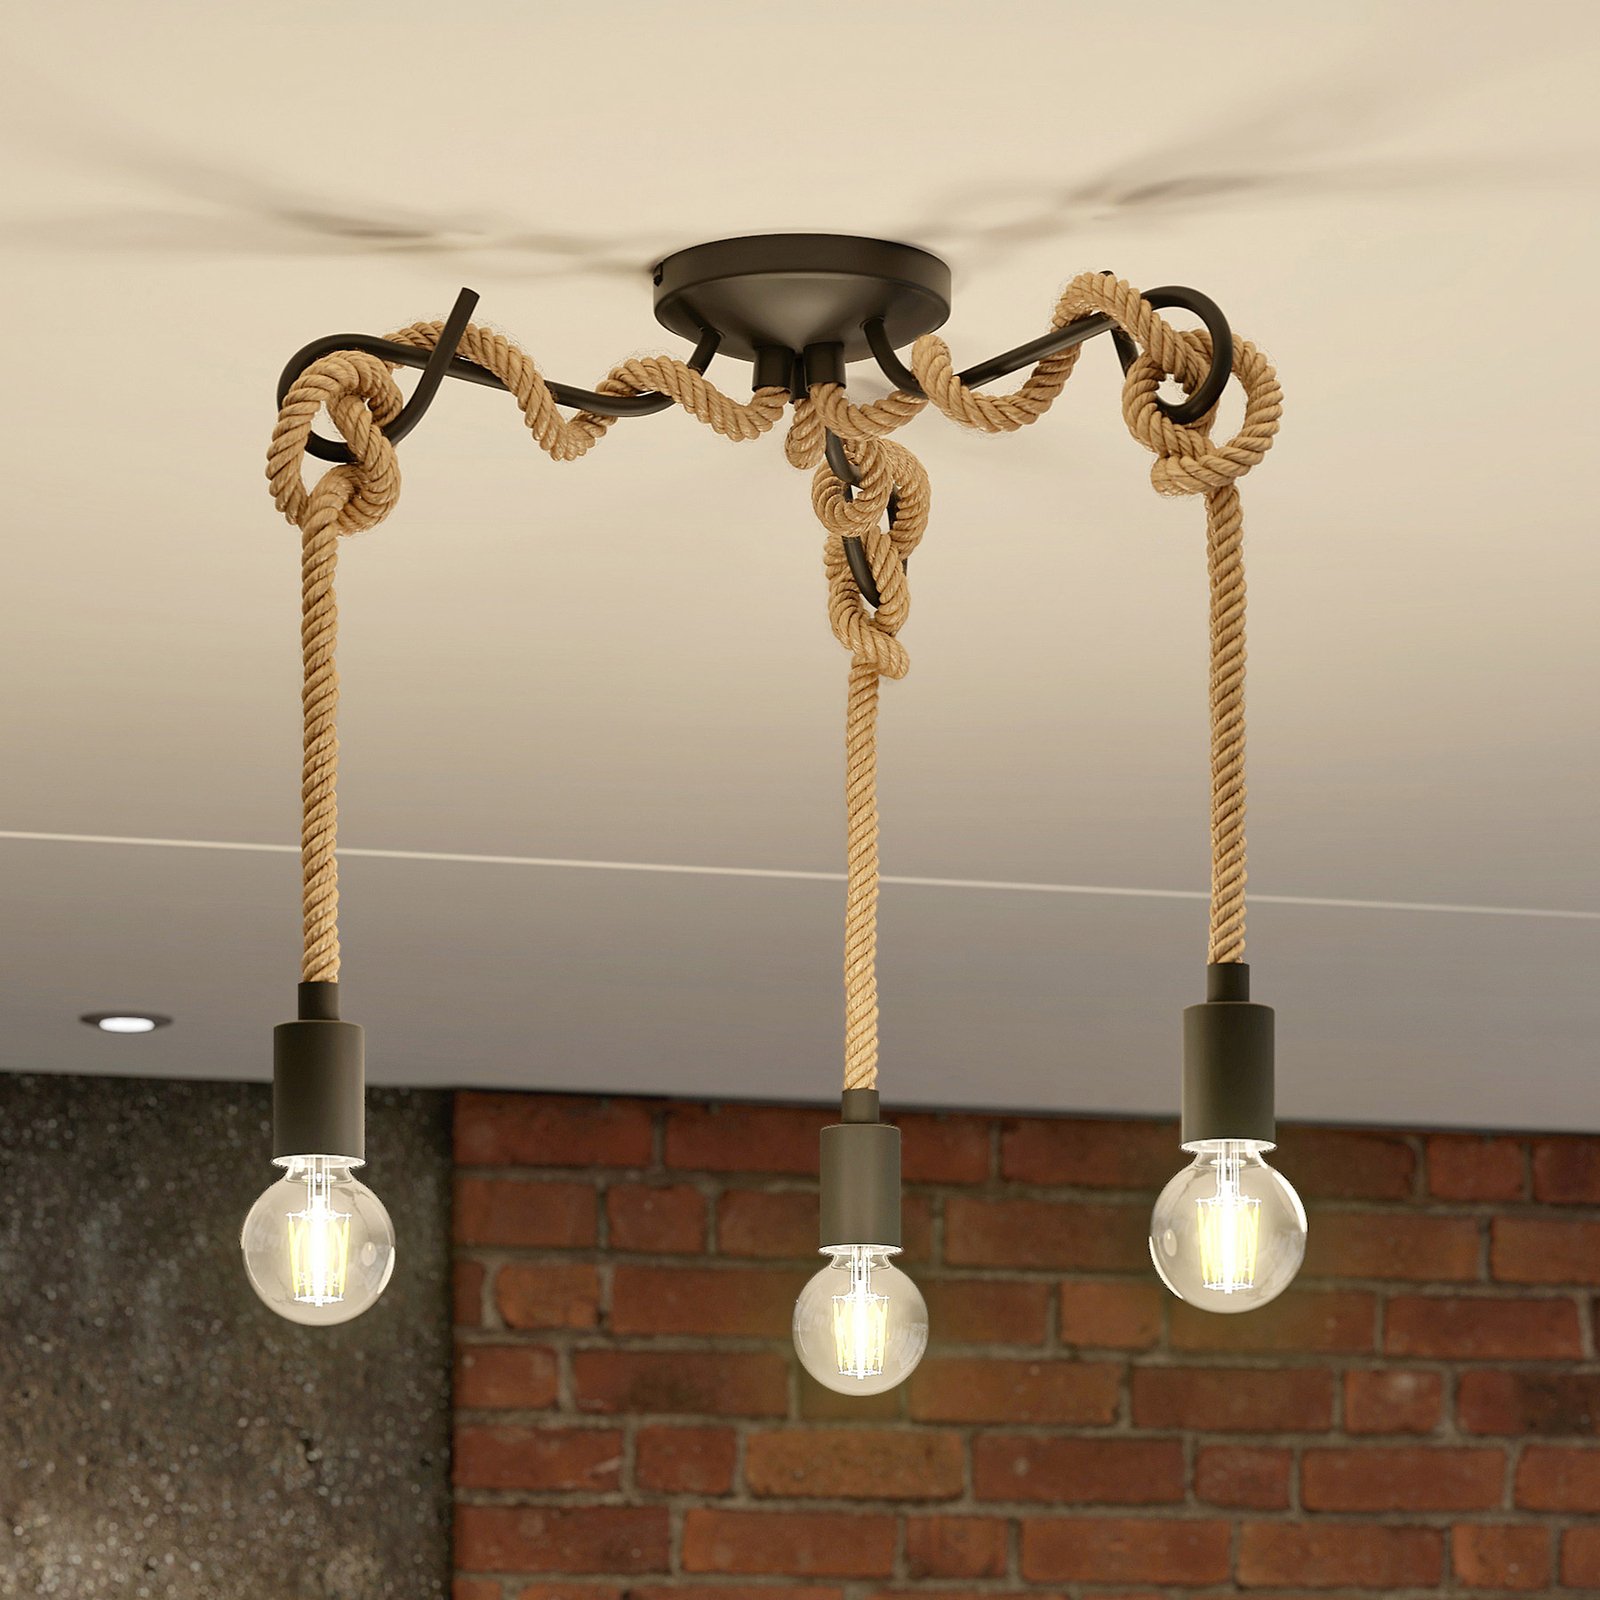 Lucande Ropina plafondlamp, 3-lamps